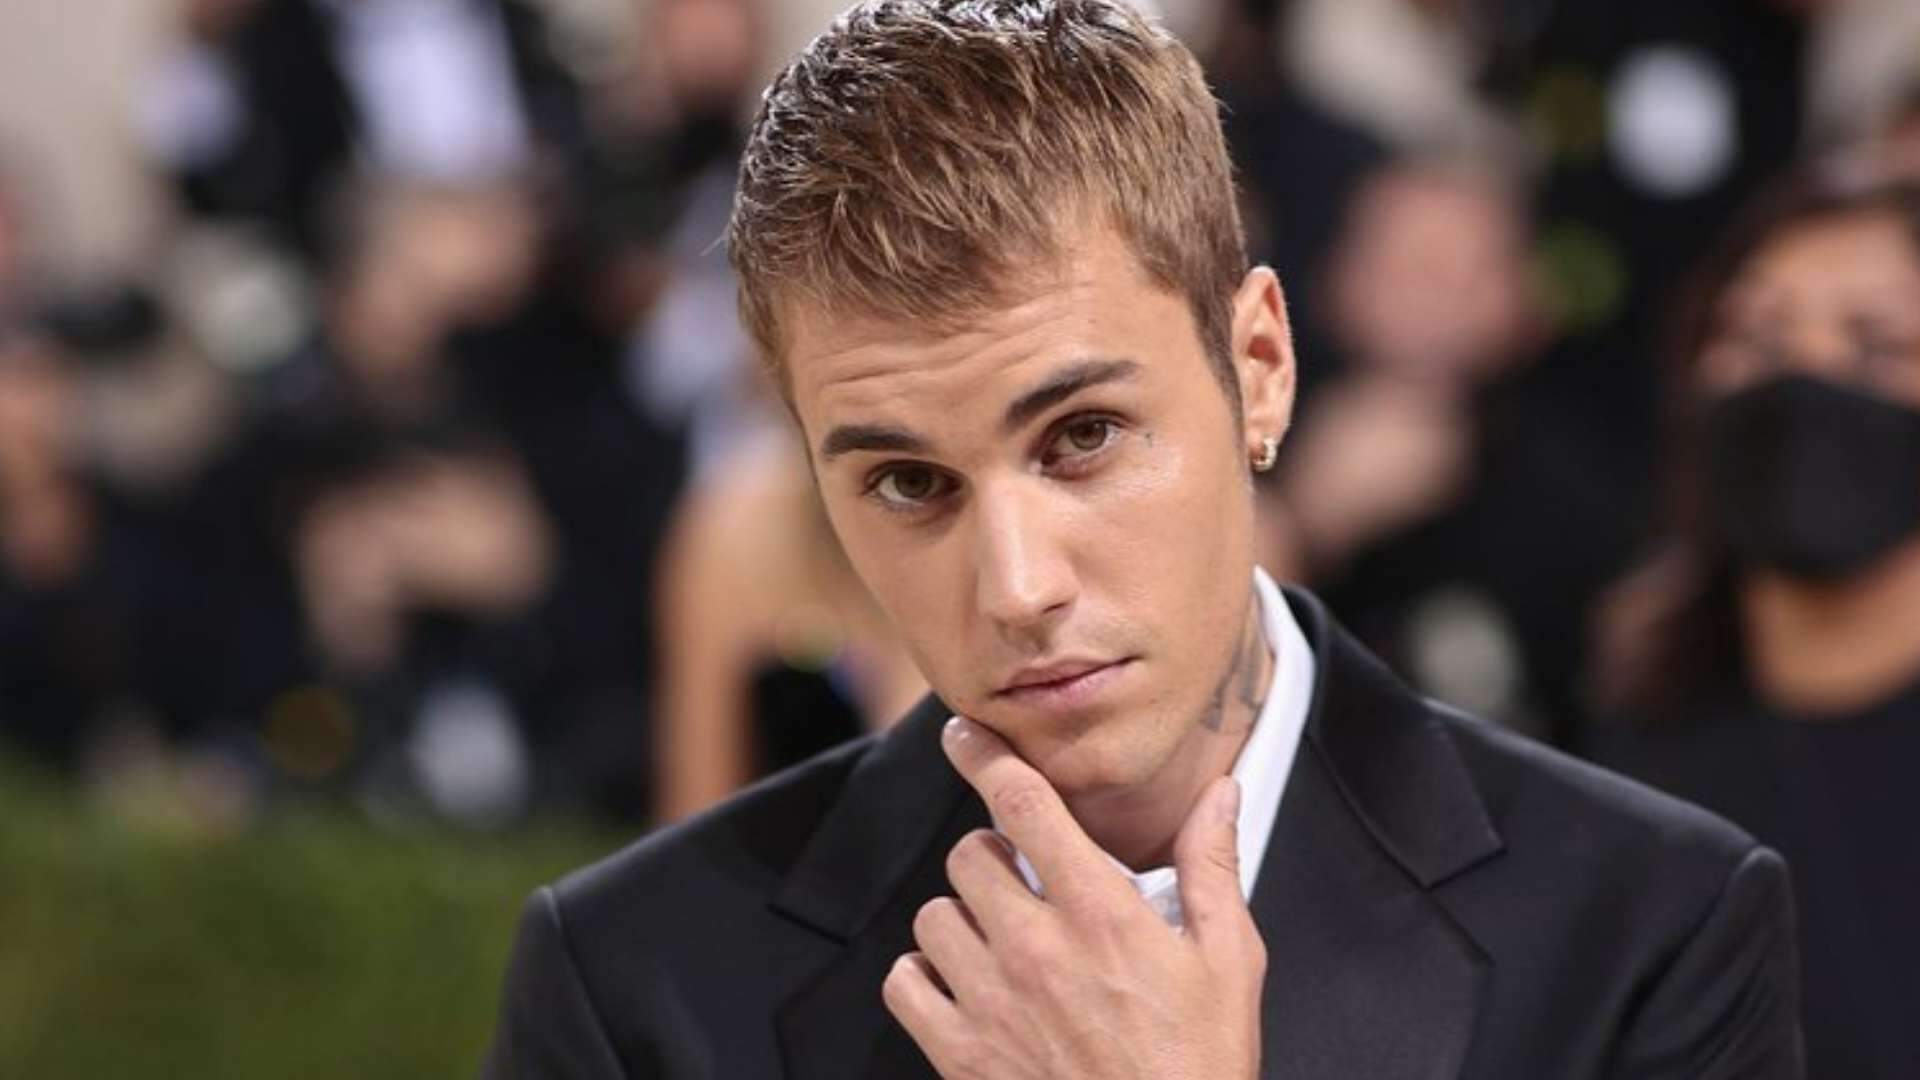 Justin Bieber supera recorde de cantor famoso em parada musical e surpreende web